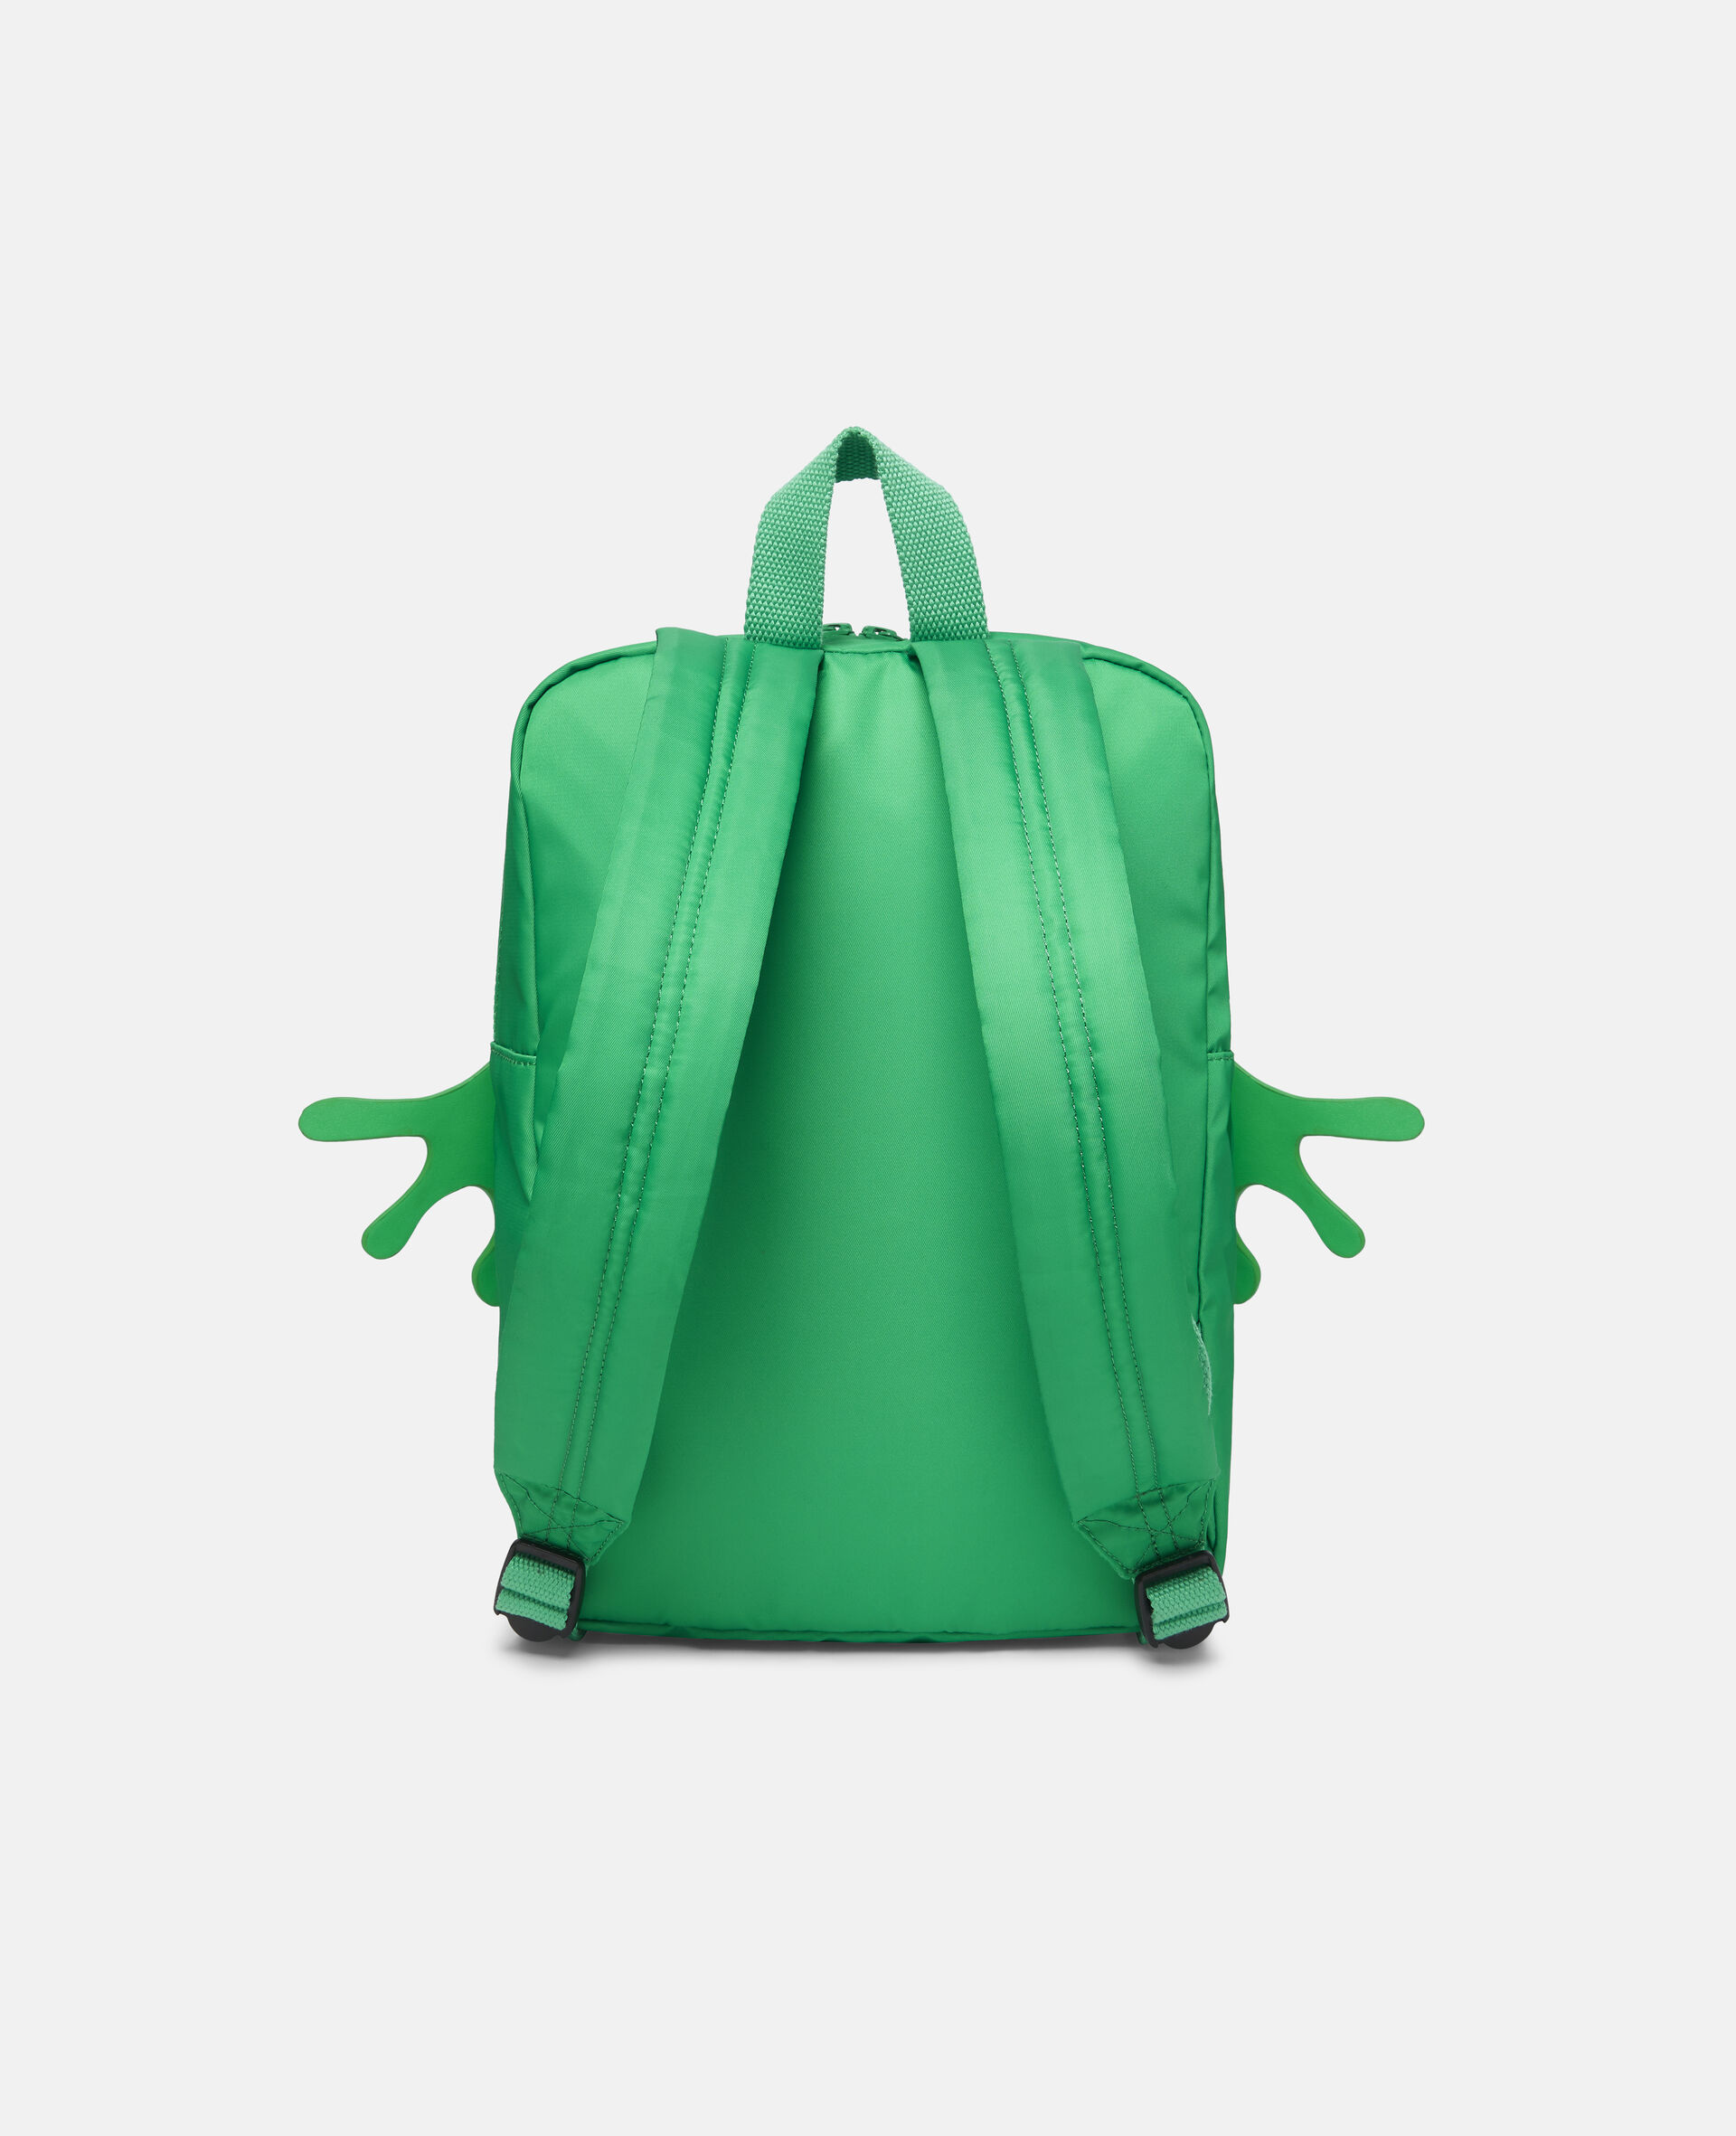 Frog Backpack-Green-large image number 3